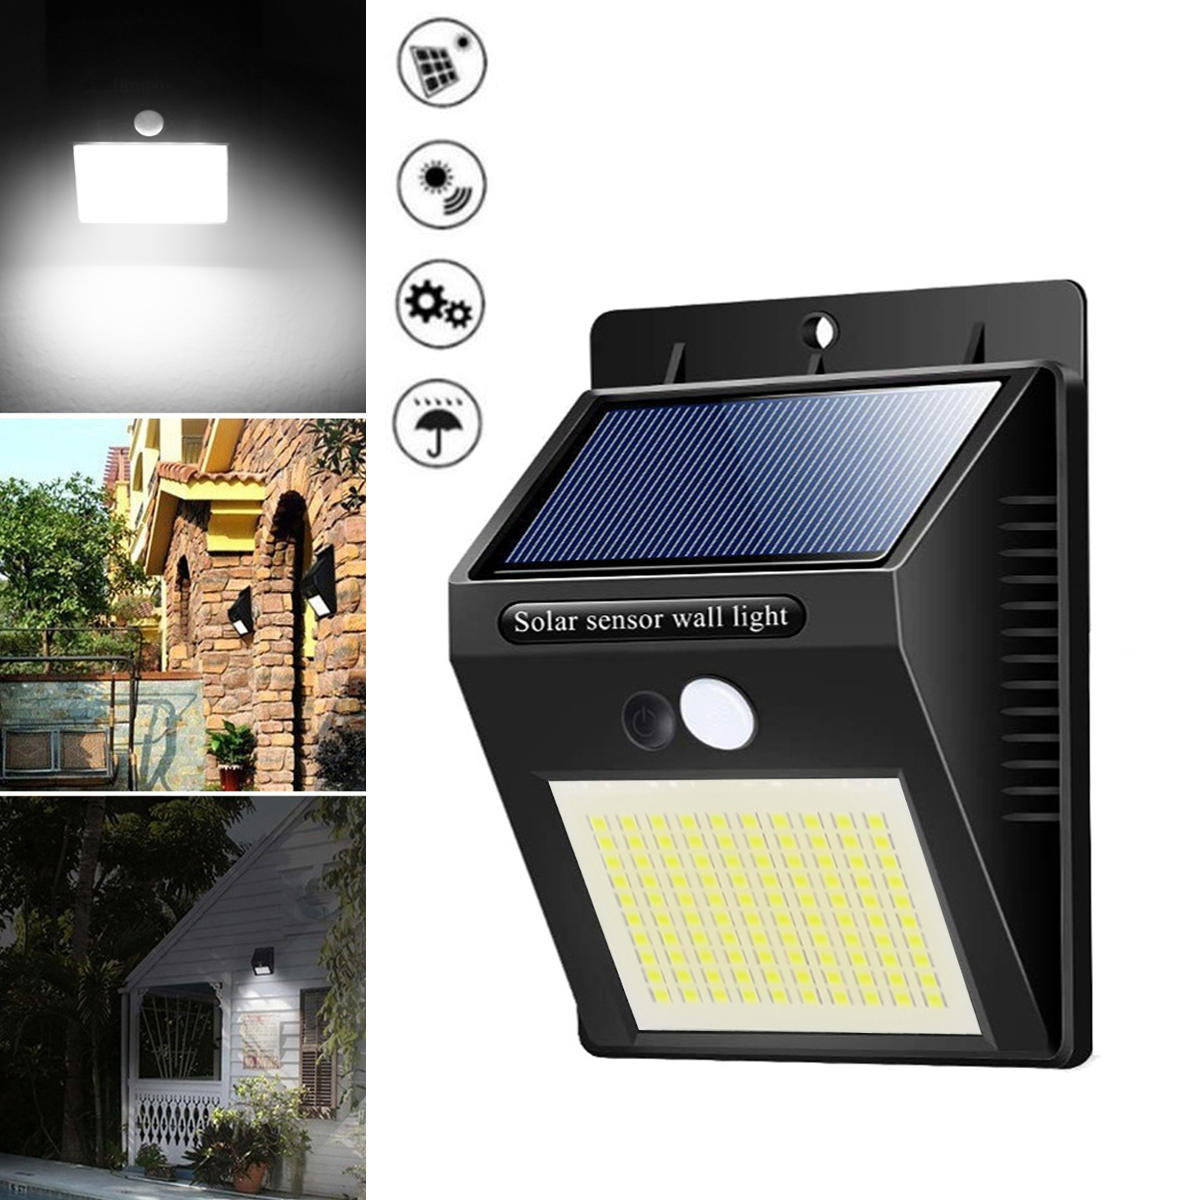 

100 LED Солнечная Свет PIR Motion Датчик Безопасность На открытом воздухе Сад Стена Лампа 3 режима освещения